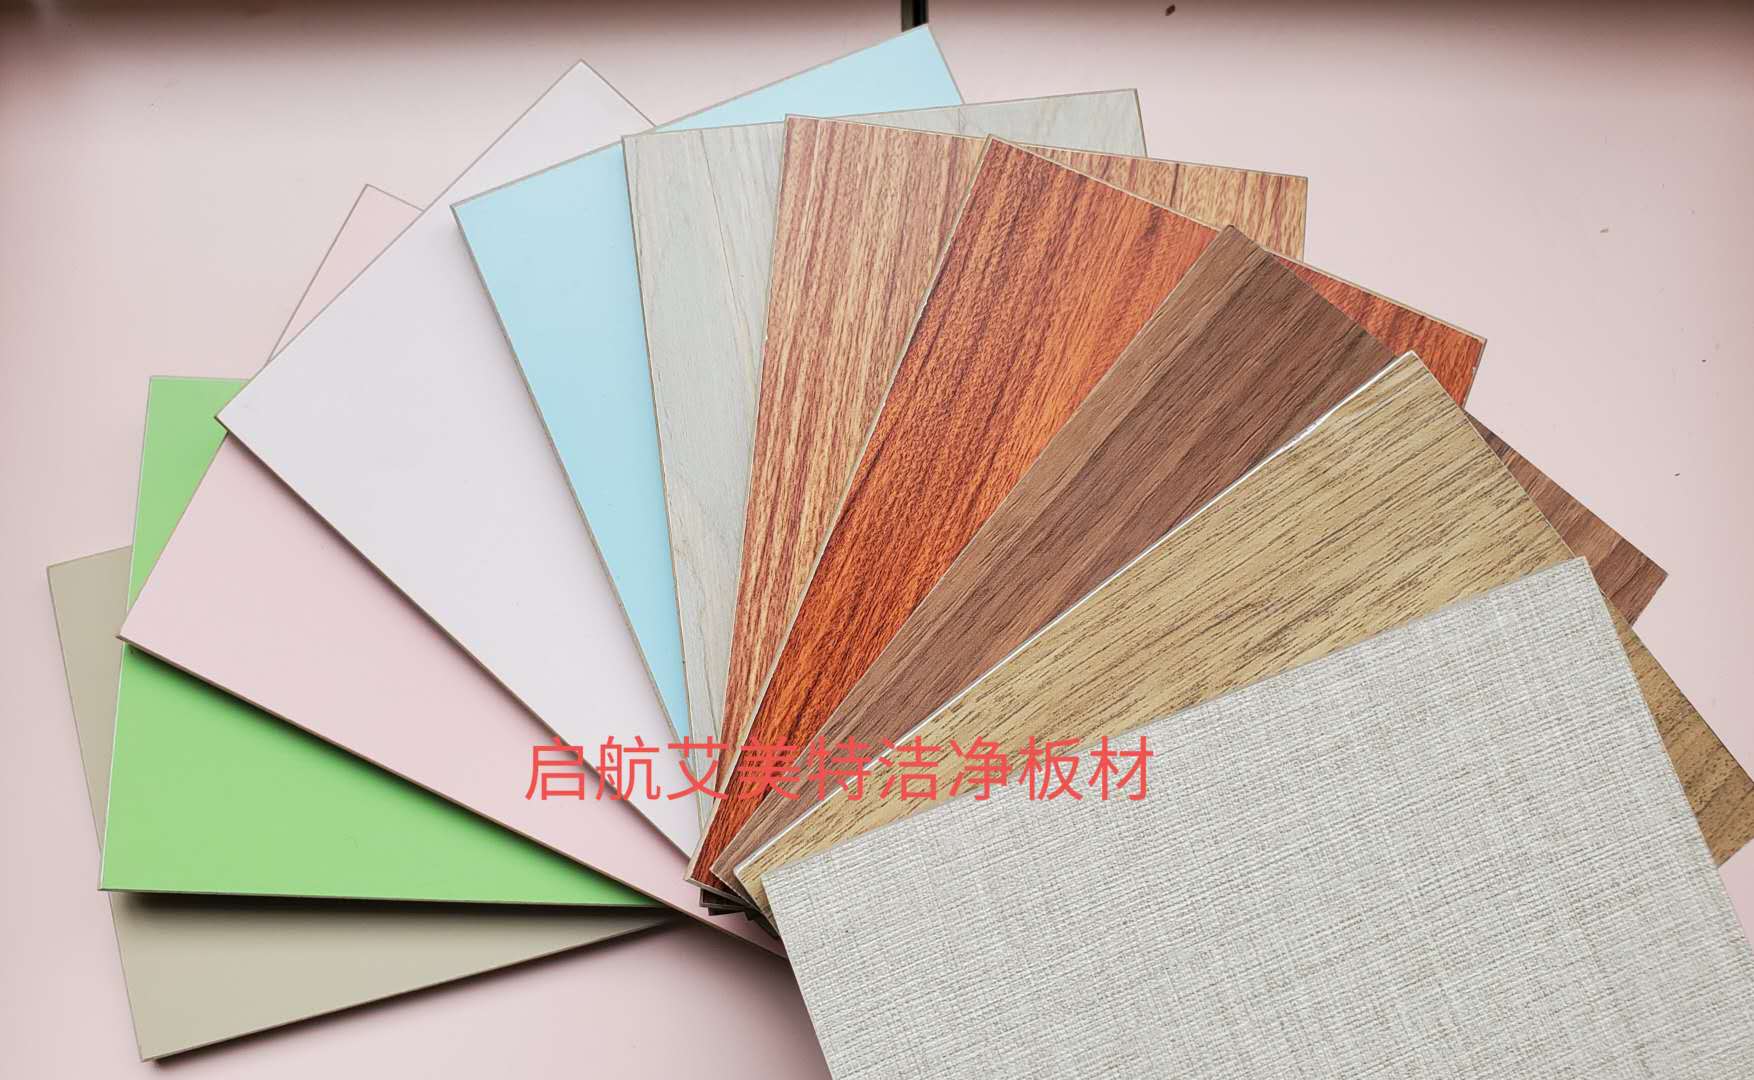 铝板北京上海天津重庆铝塑板翻新铝镁锰板翻新改色保温装饰一体板